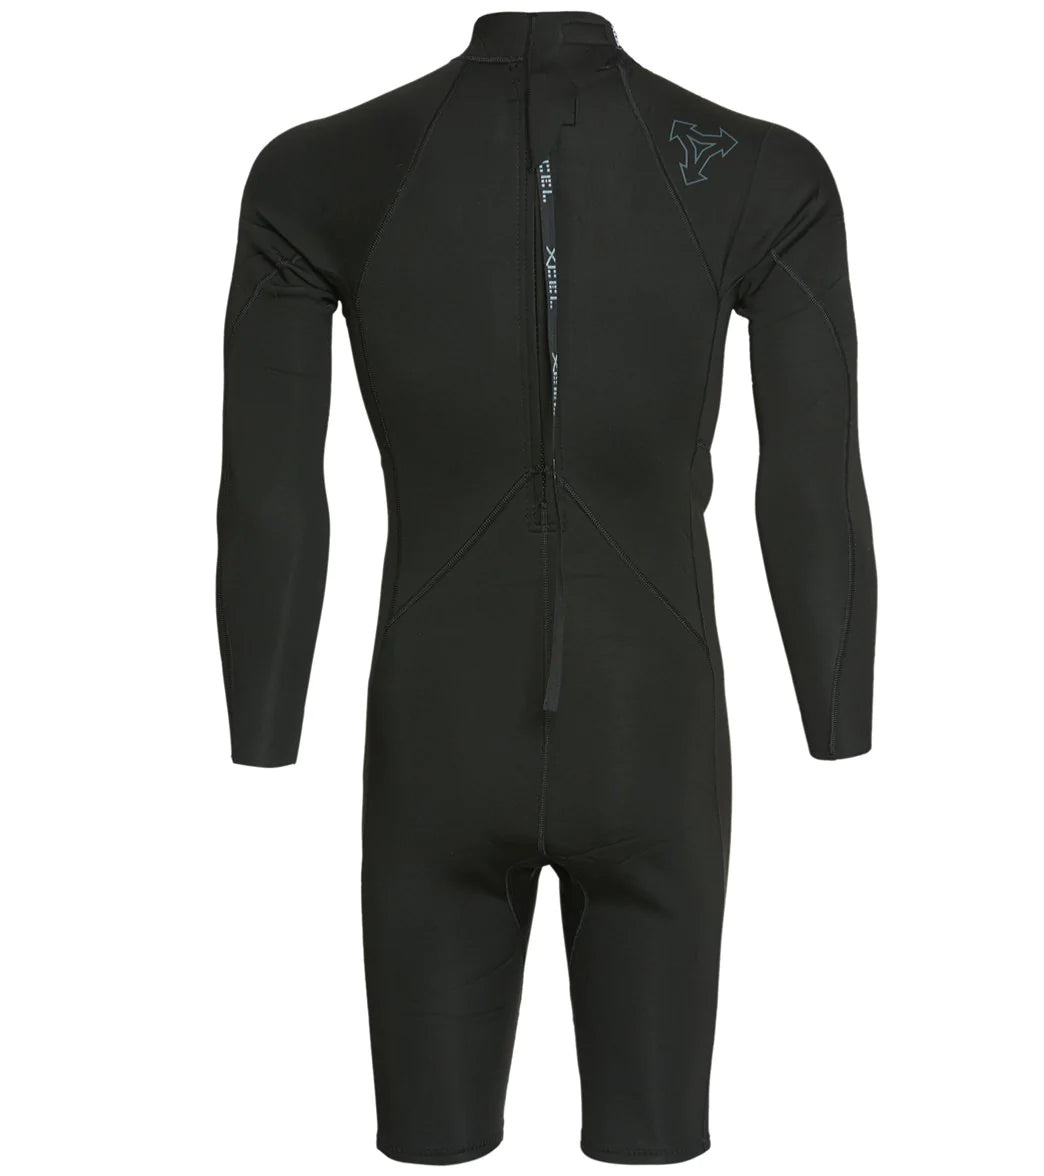 Xcel Axis S/S 2mm Spring Suit back zip